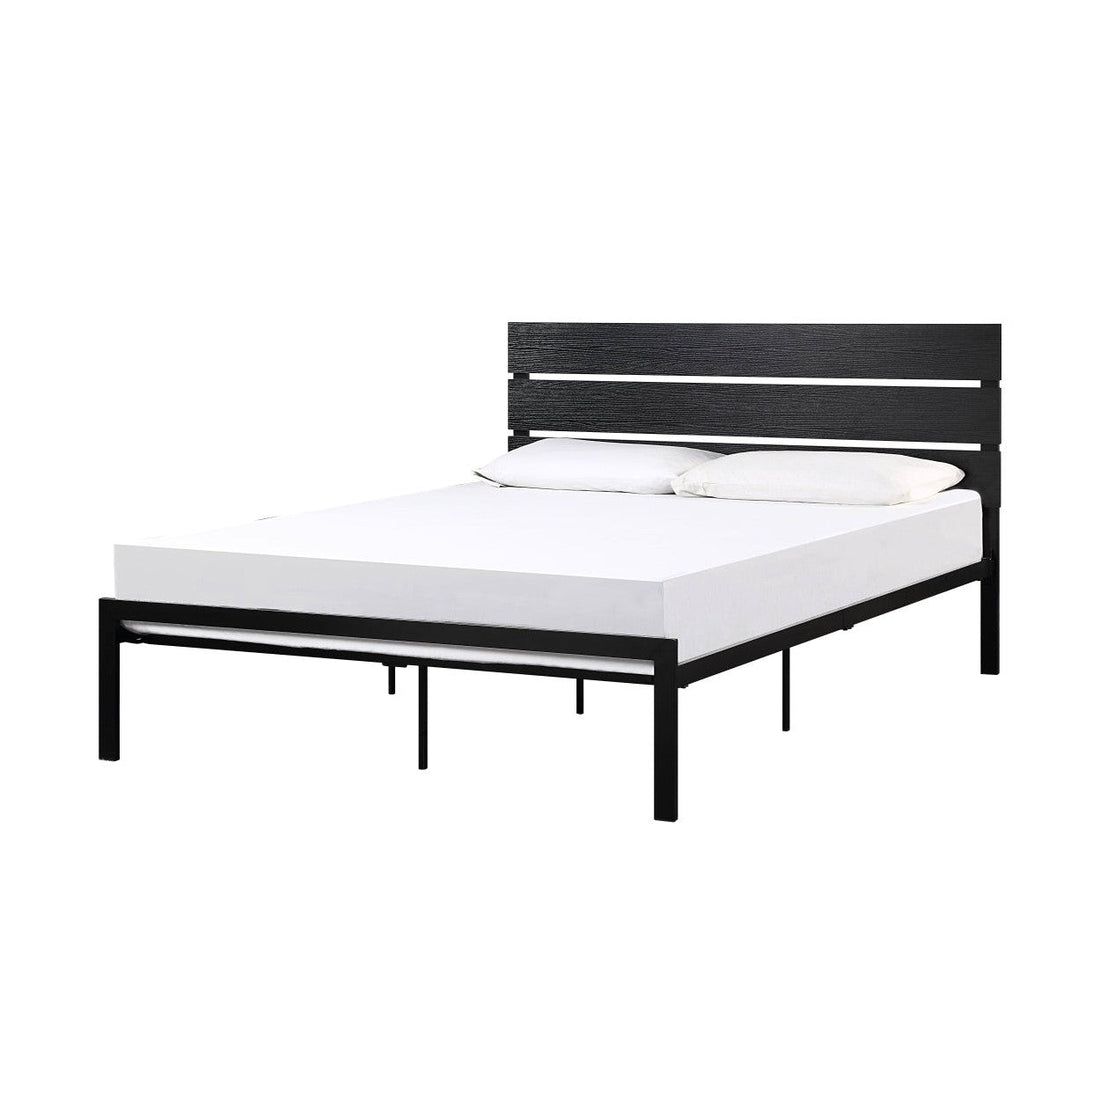 BLACK METAL BED, FULL HM1804BKF-1